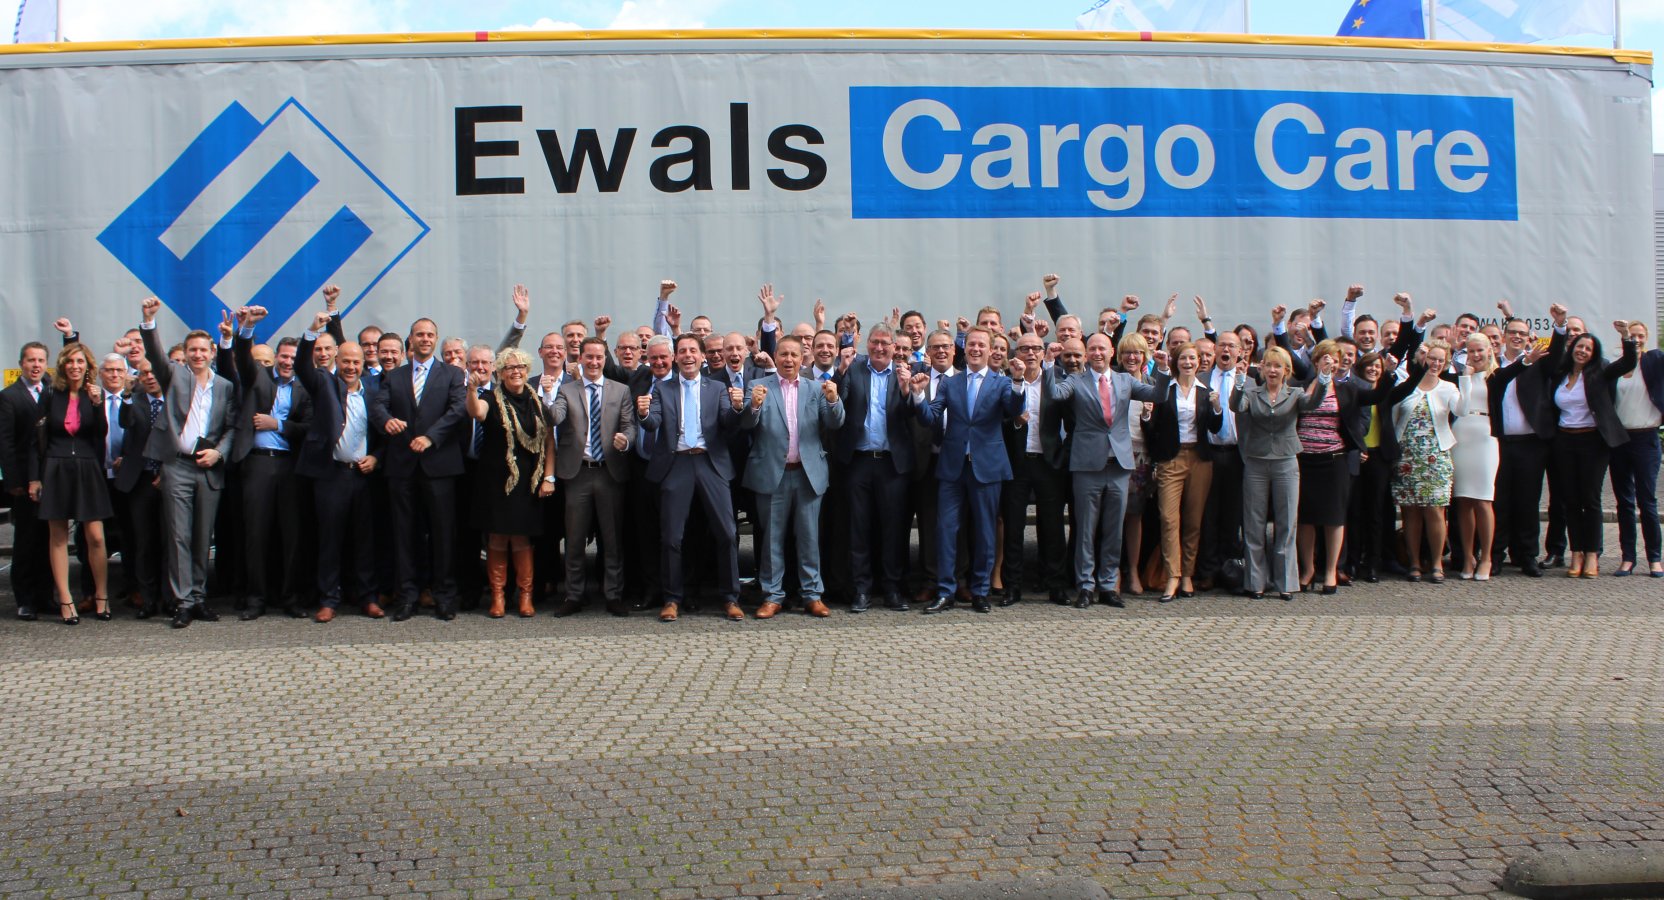 EWALS CARGO CARE Česká republika rozšiřuje své působení 